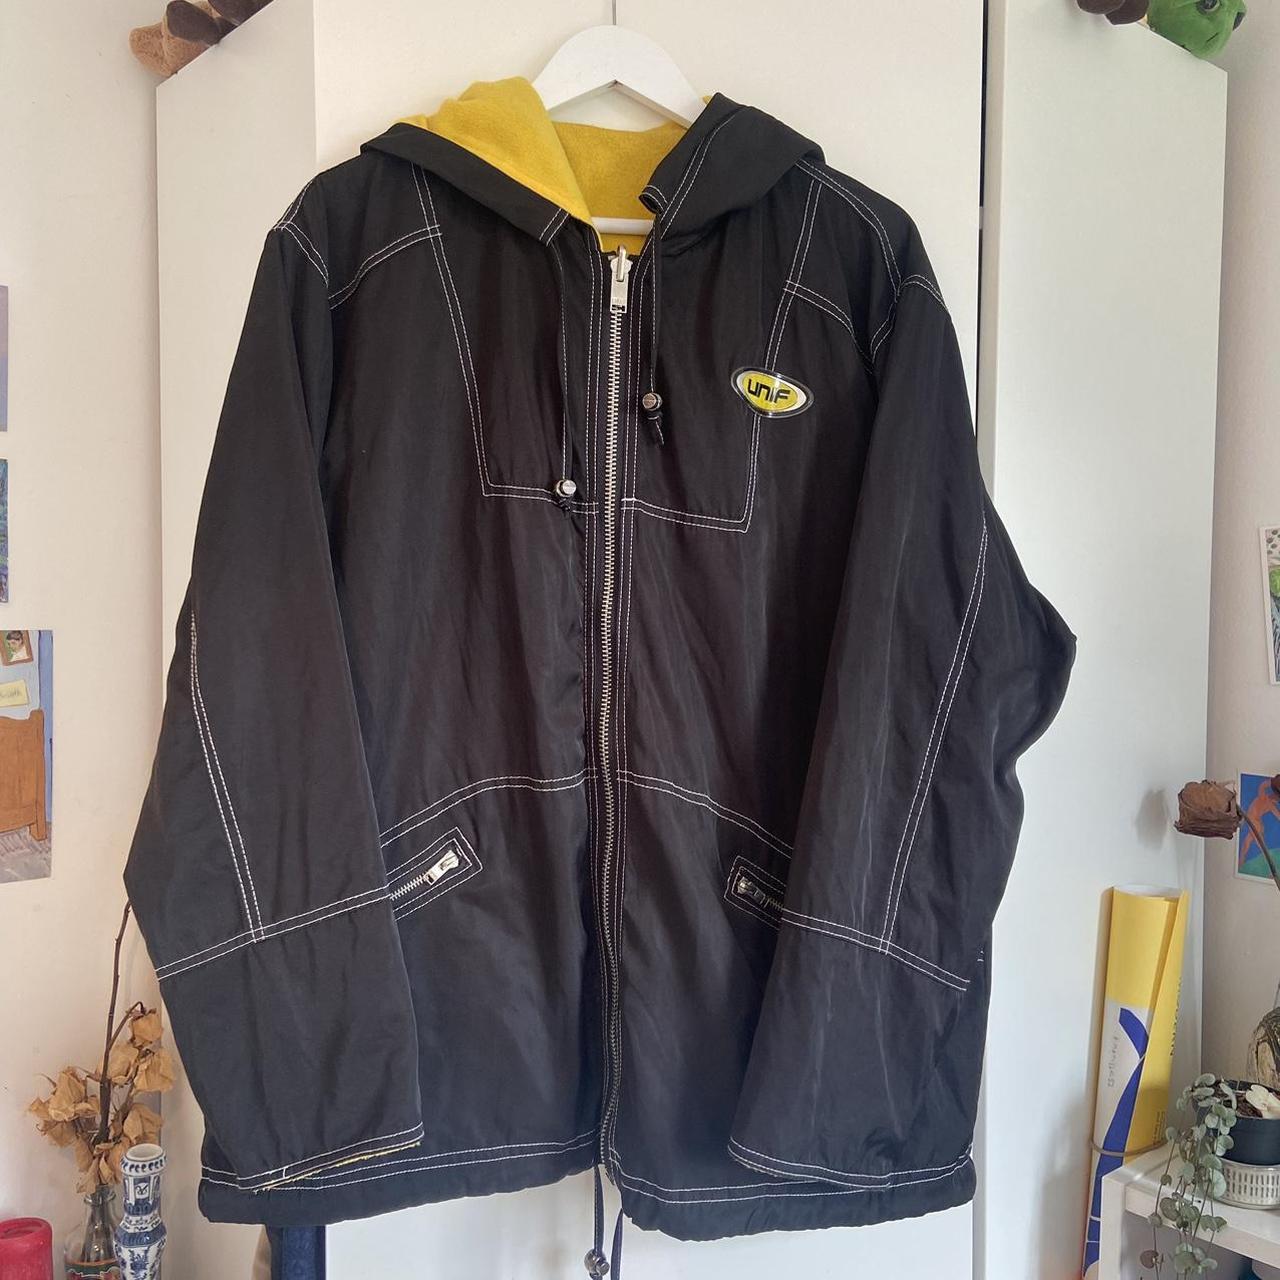 Unif | Puffa Jacket S / Yellow/Black